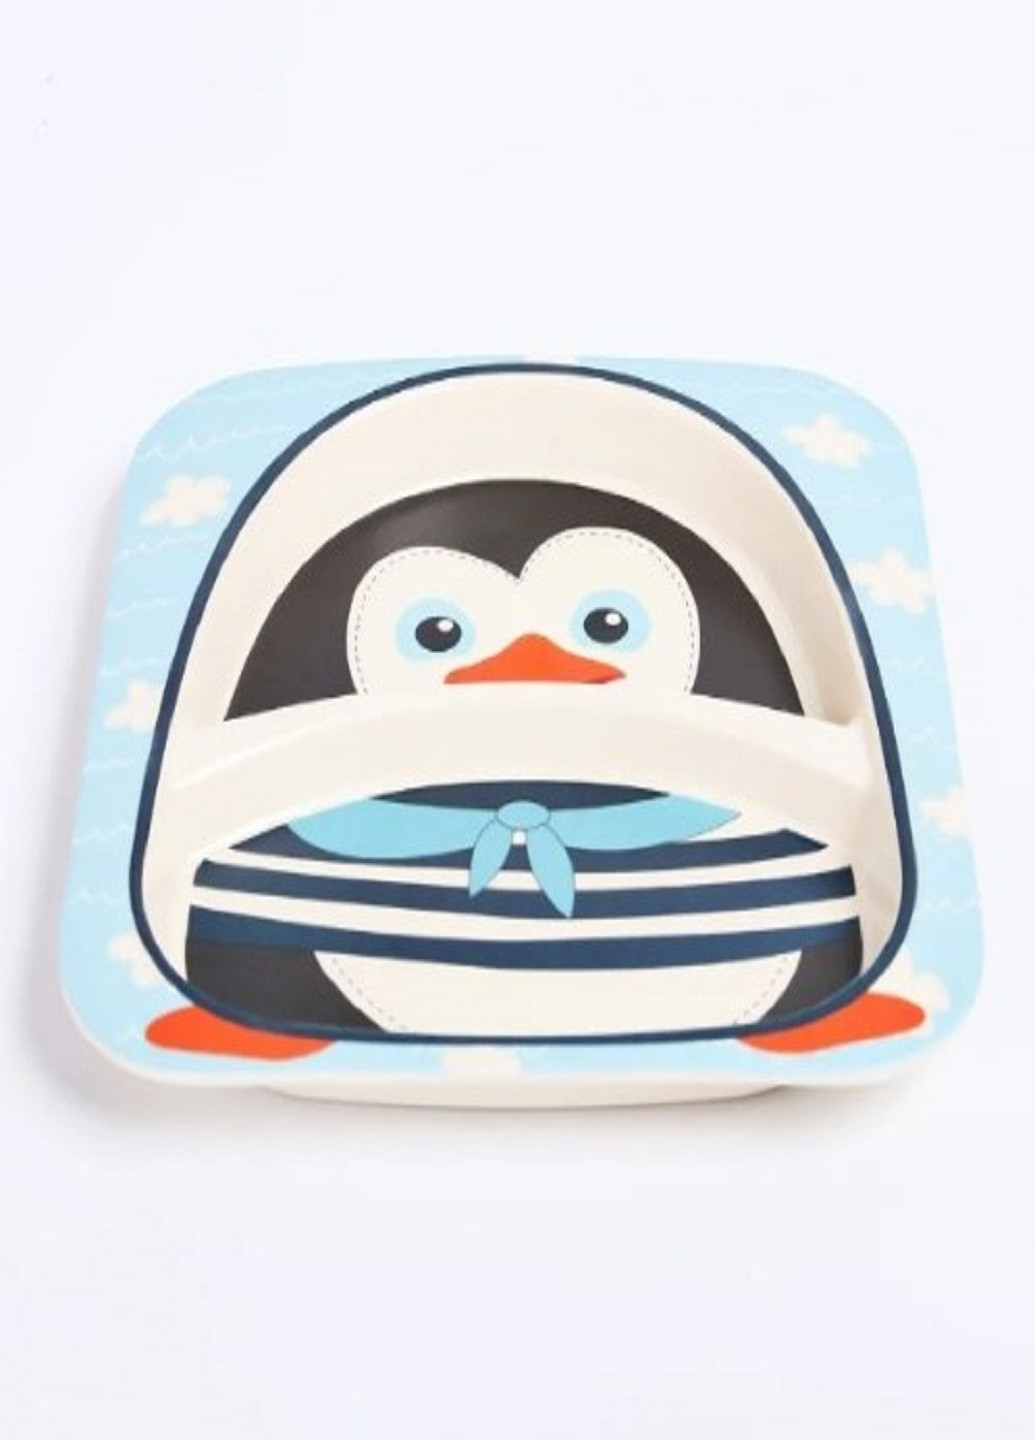 Бамбуковый набор детской посуды ECO friendly product 5 предметов пингвинчик голубой VTech (263360265)